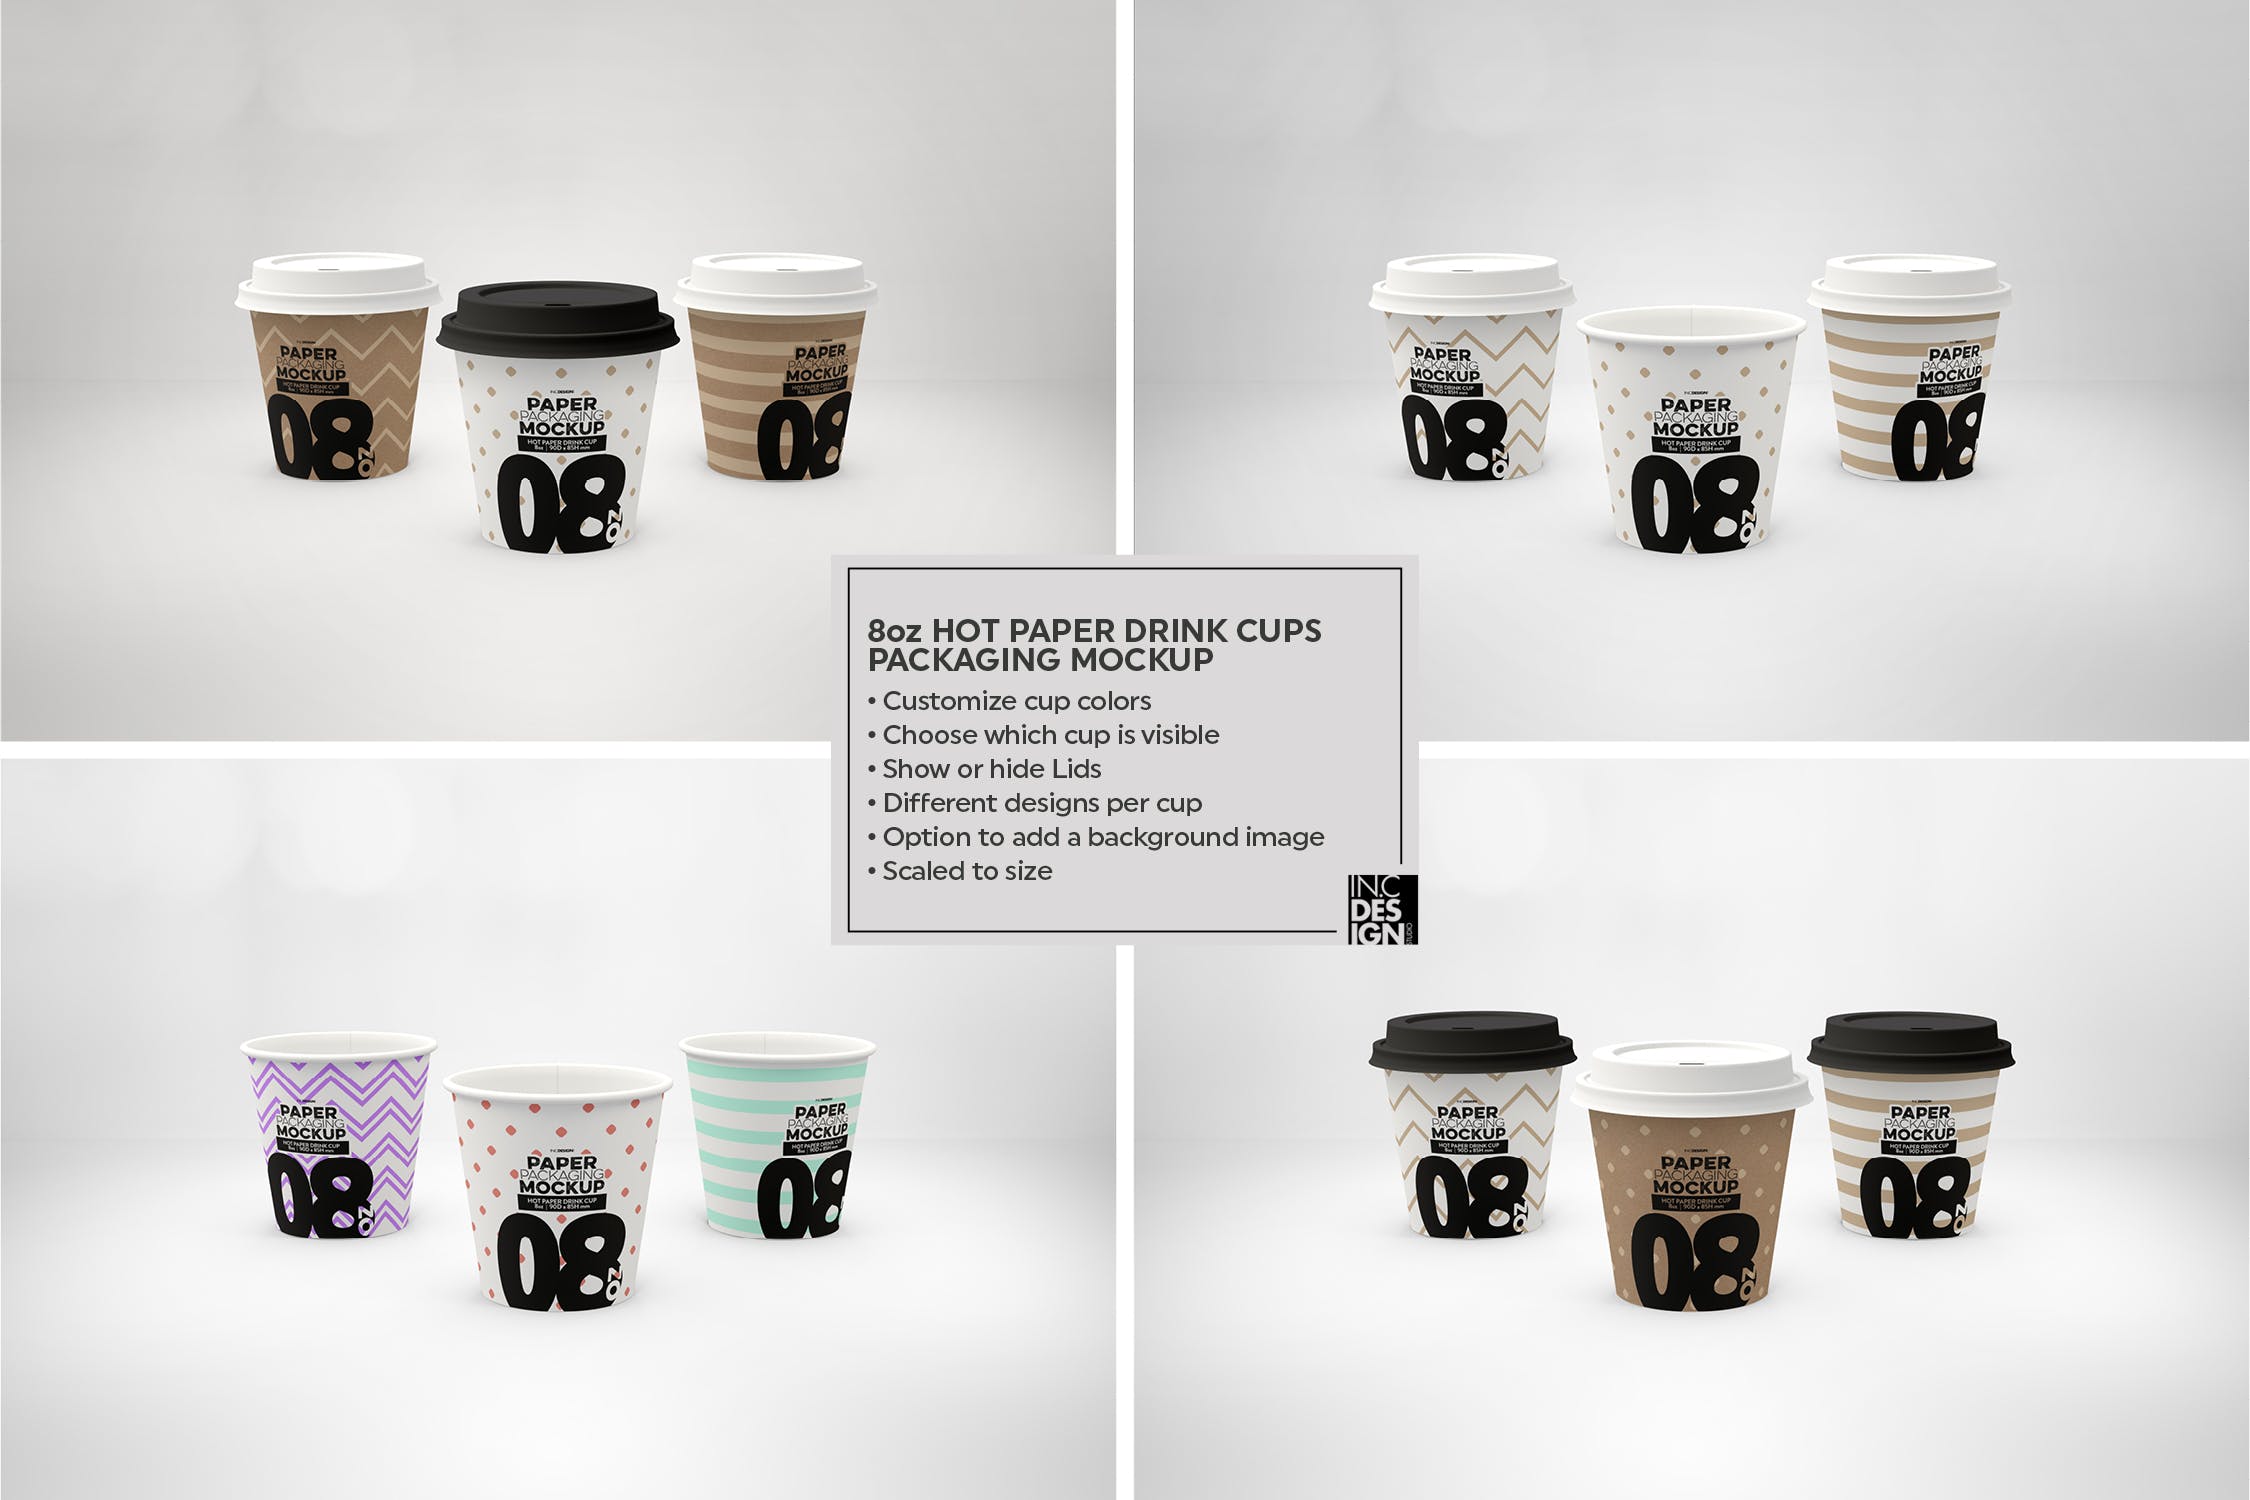 热饮一次性纸杯外观设计第一素材精选 Paper Hot Drink Cups Packaging Mockup插图(15)